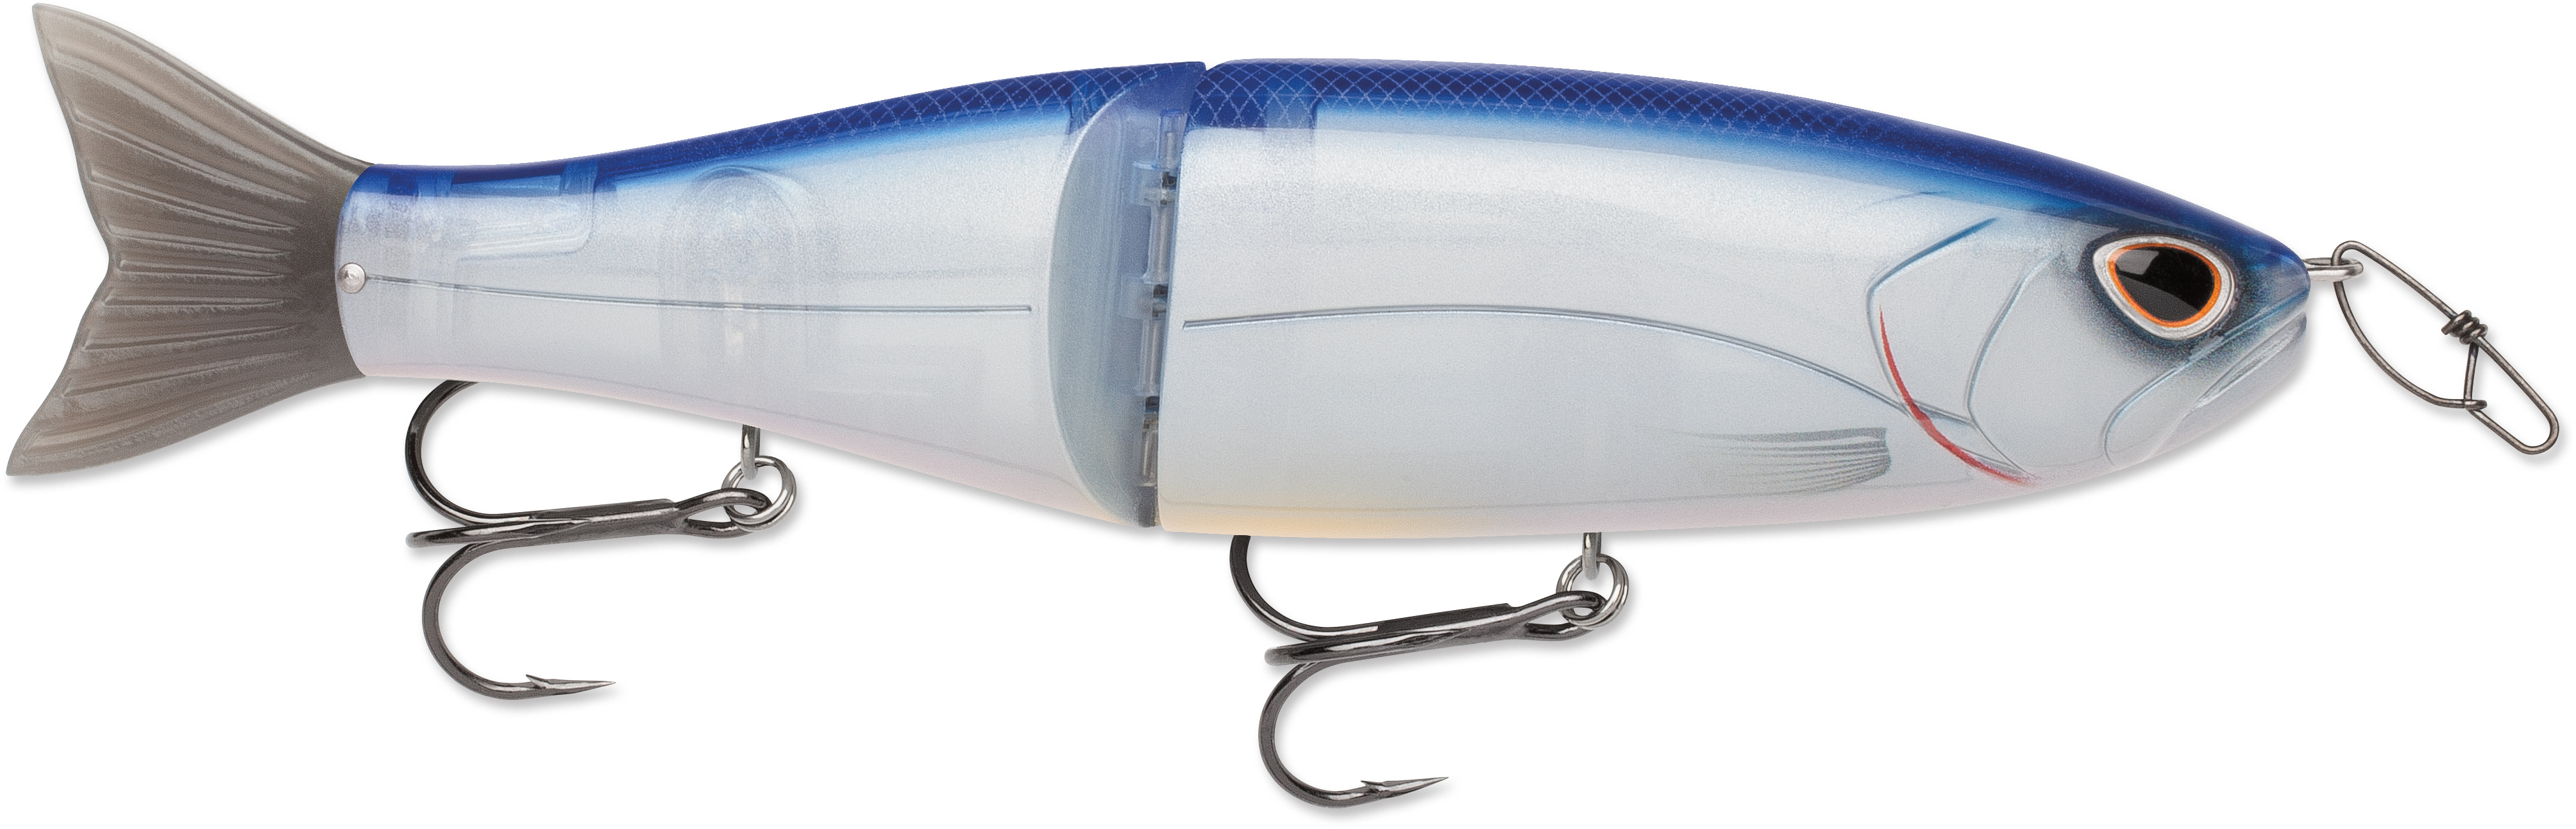 Storm Agb19 Arashi Glide Fishing Bait 690 Threadfin Shad for sale